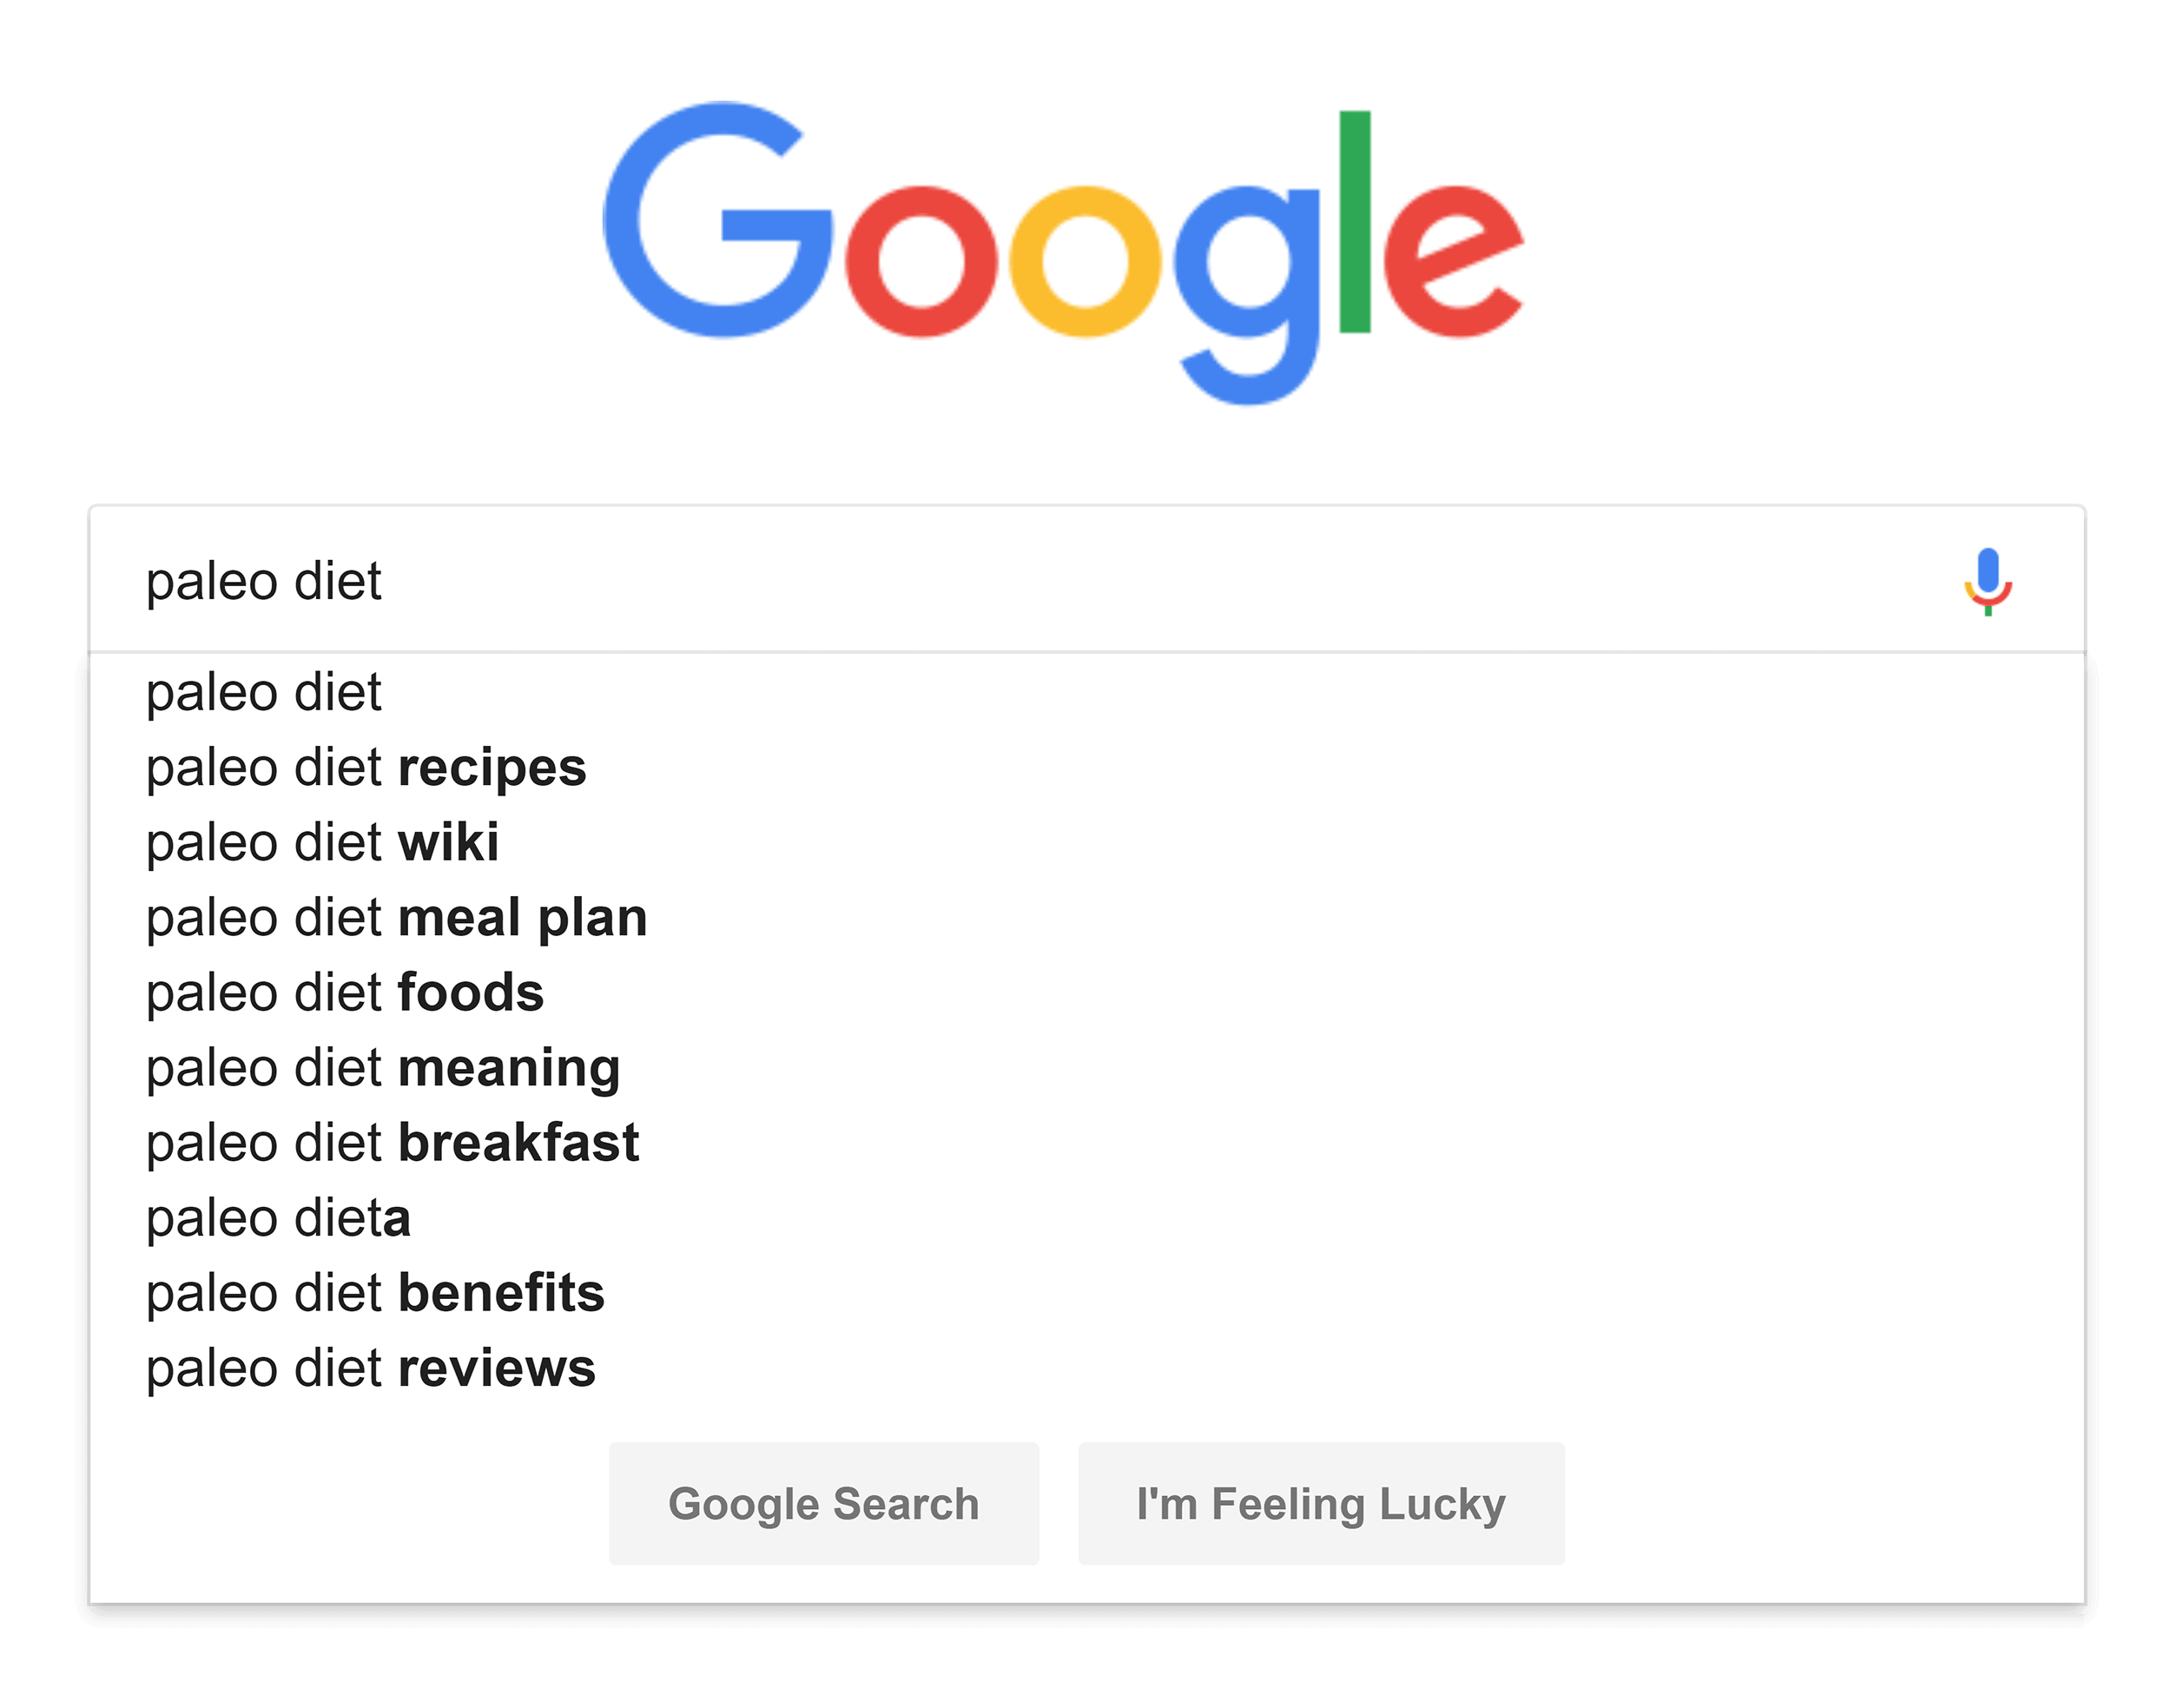 Google suggest – "paleo diet"